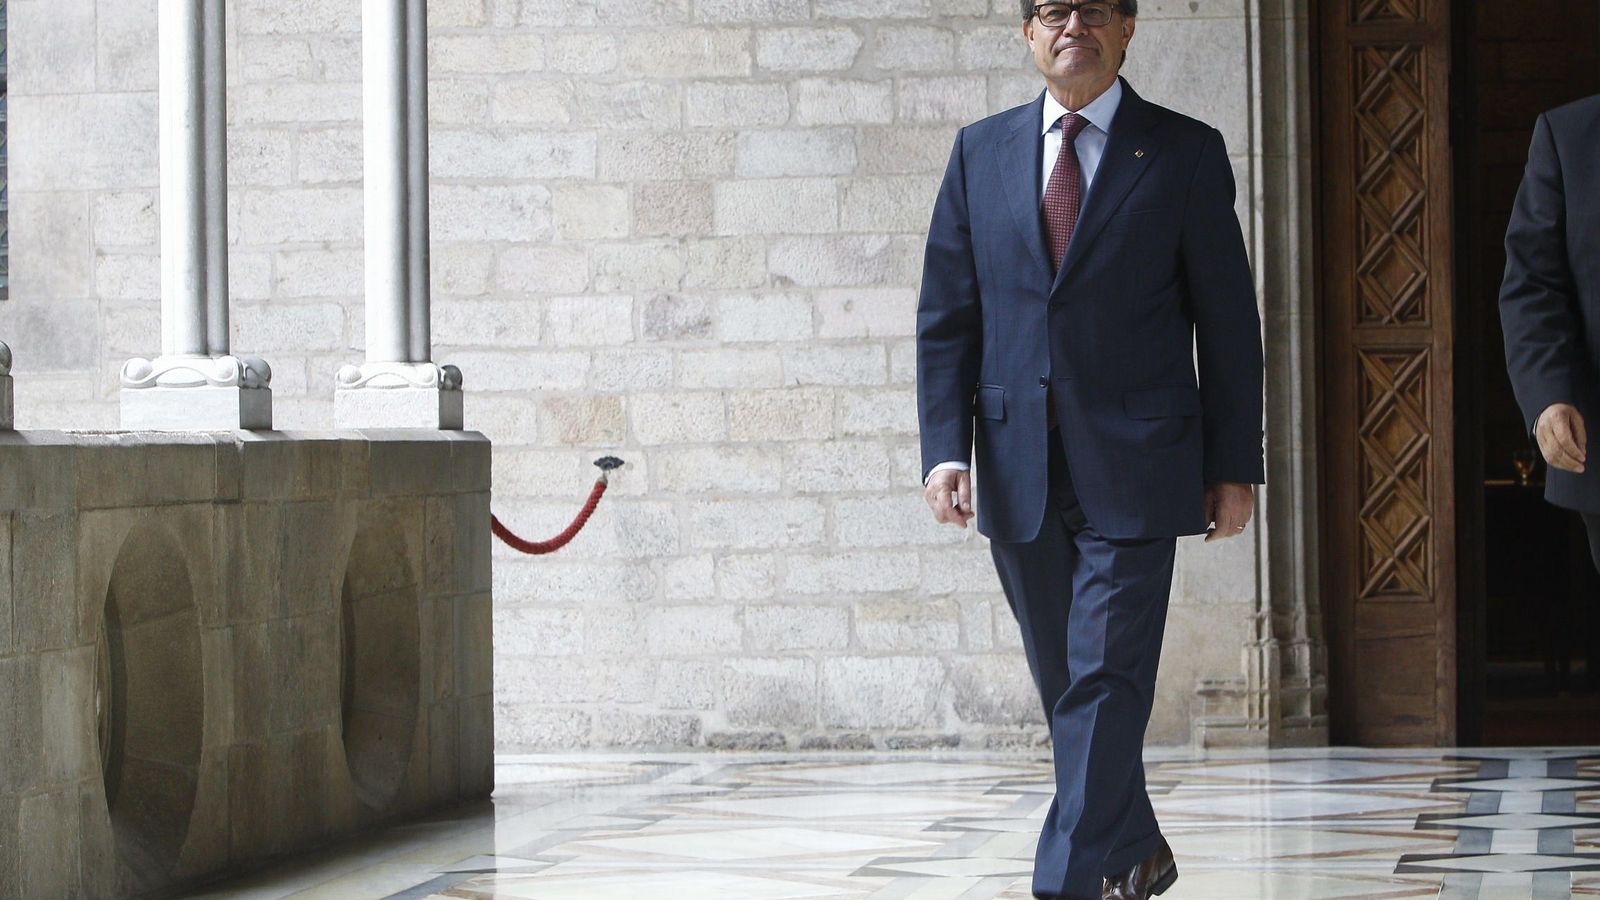 Foto: El presidente de la Generalitat en funciones, Artur Mas. (EFE)